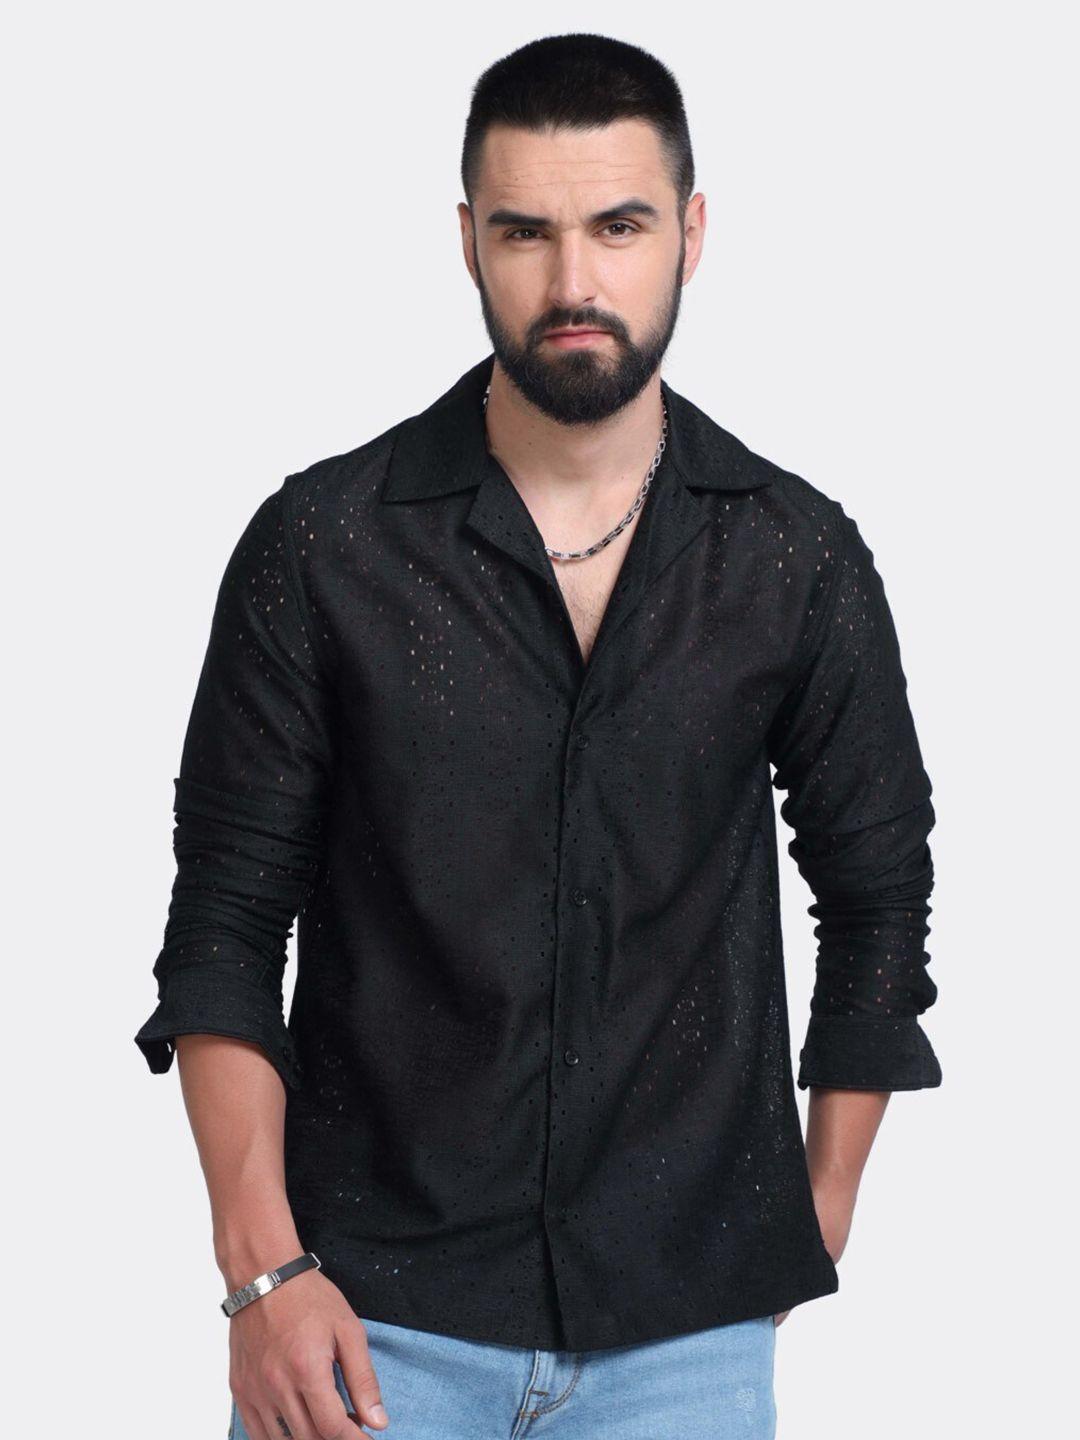 badmaash slim fit geometric self design cuban collar casual shirt